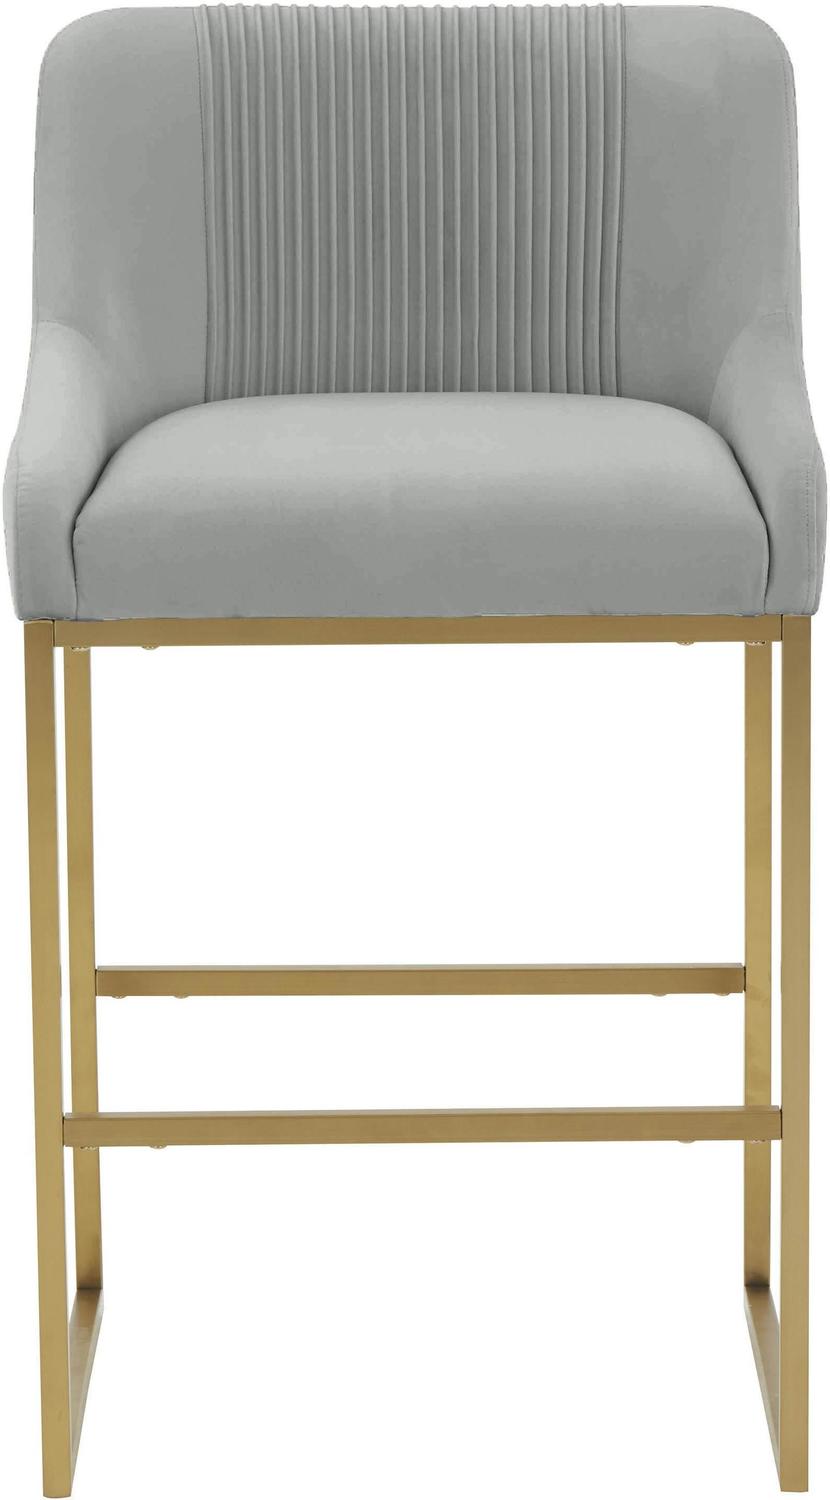 gold breakfast bar stools Tov Furniture Stools Grey